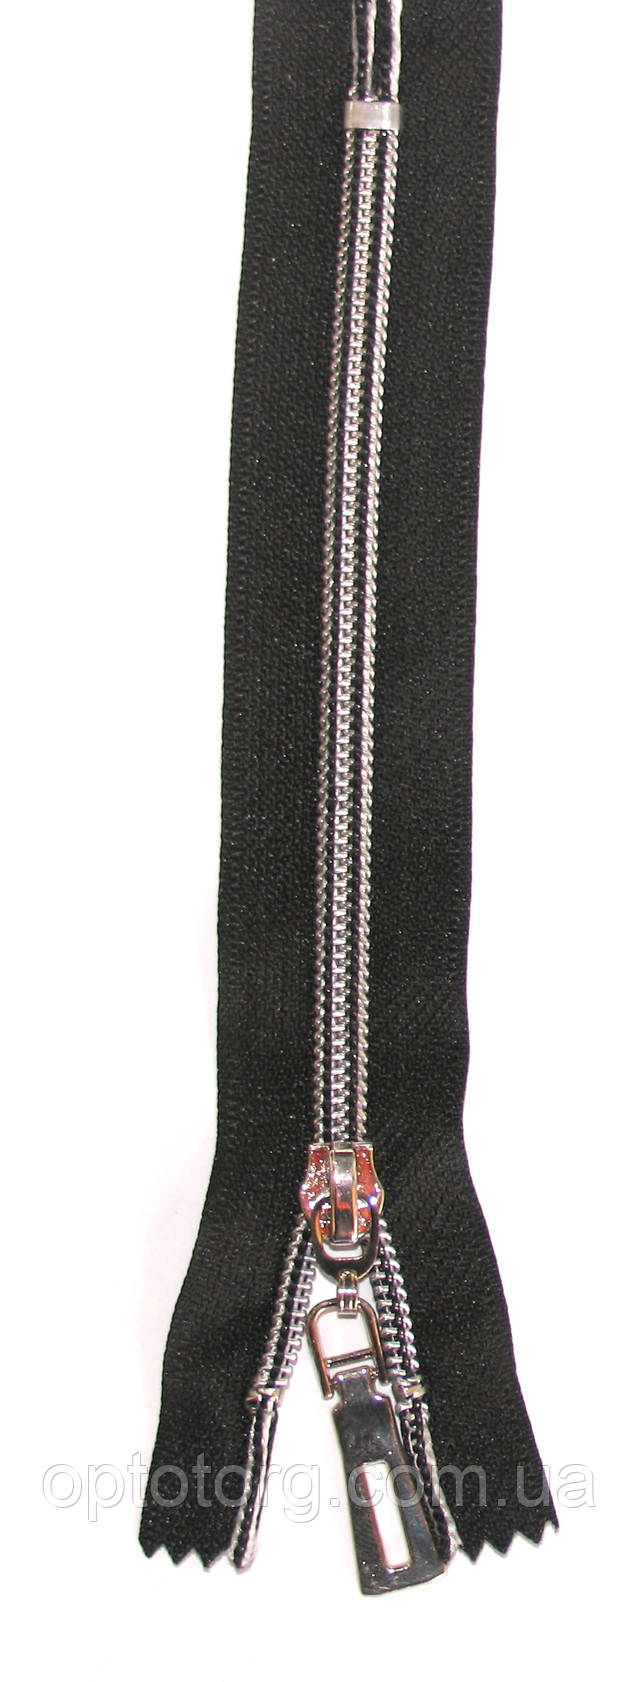 сильвер карманка №7 змейка молния серебро на черной ткани